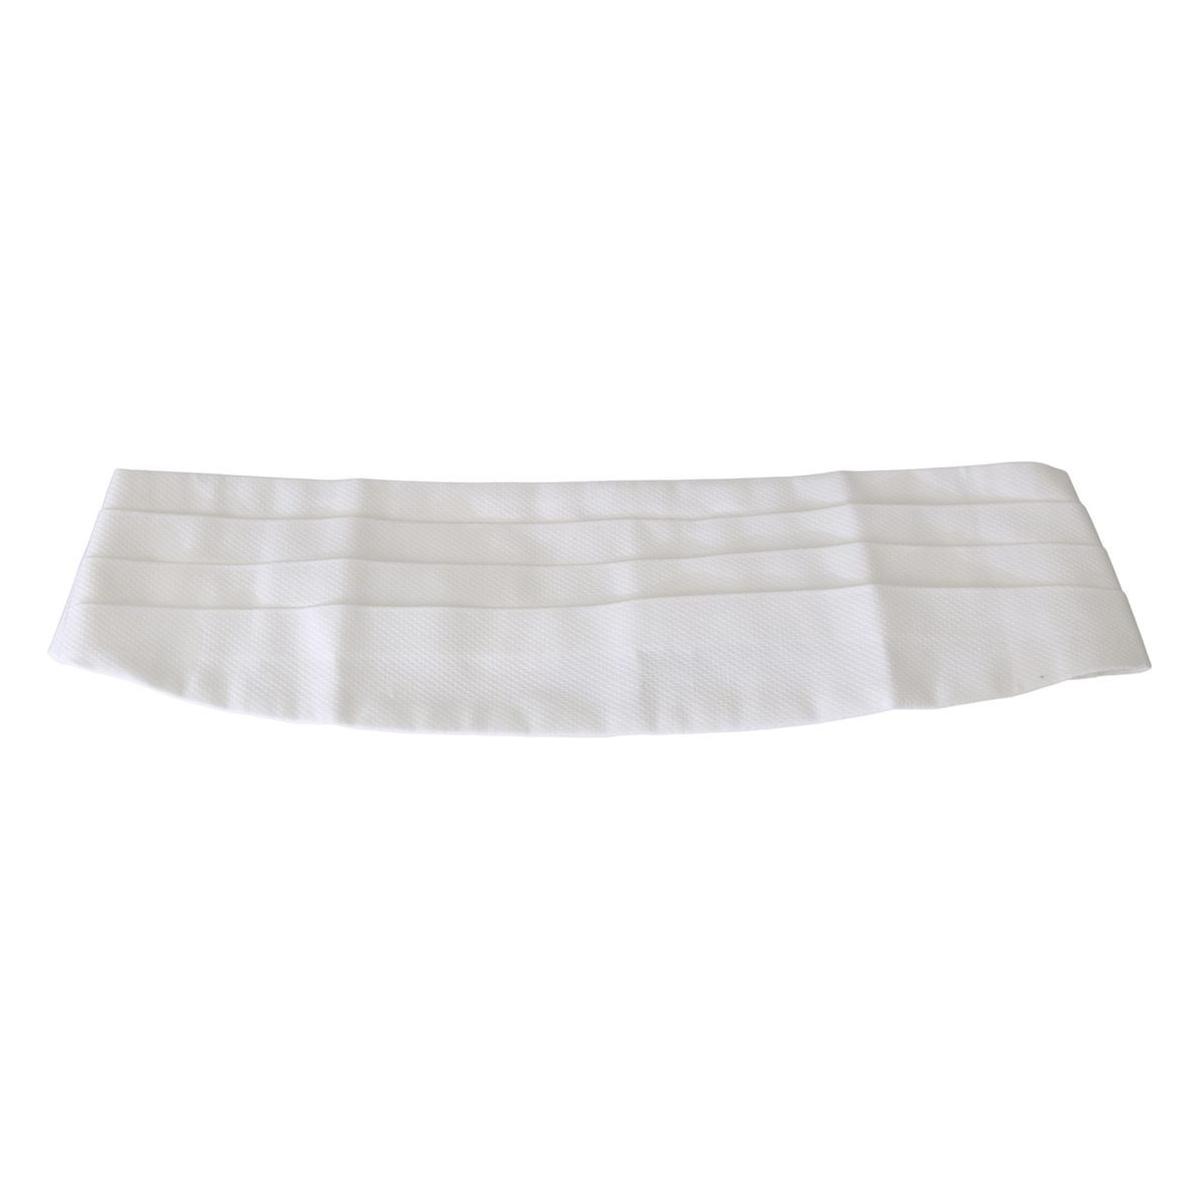 Dolce & Gabbana Elegant Silk White Cummerbund white-men-waist-belt-cotton-cummerbund IMG_9637-scaled-d61bd8a9-a31.jpg